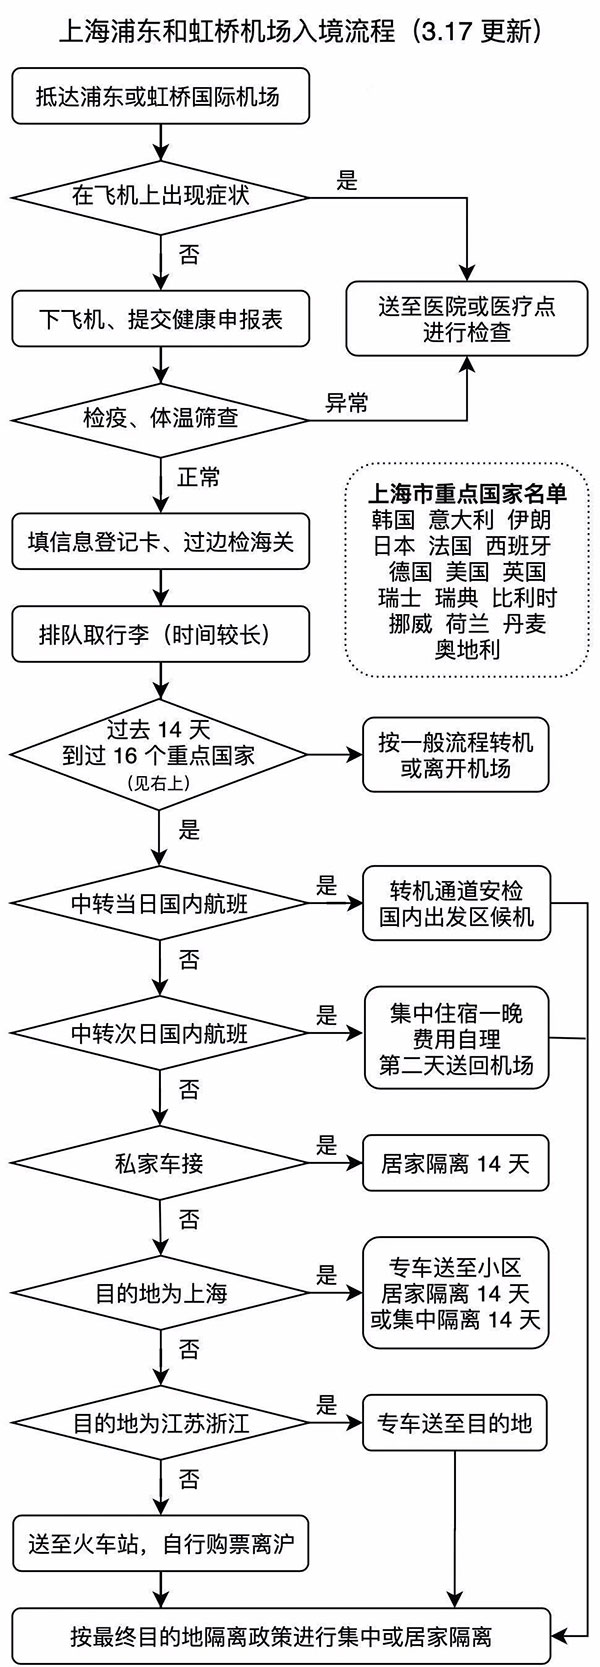 上海浦东机场和虹桥机场入境流程图